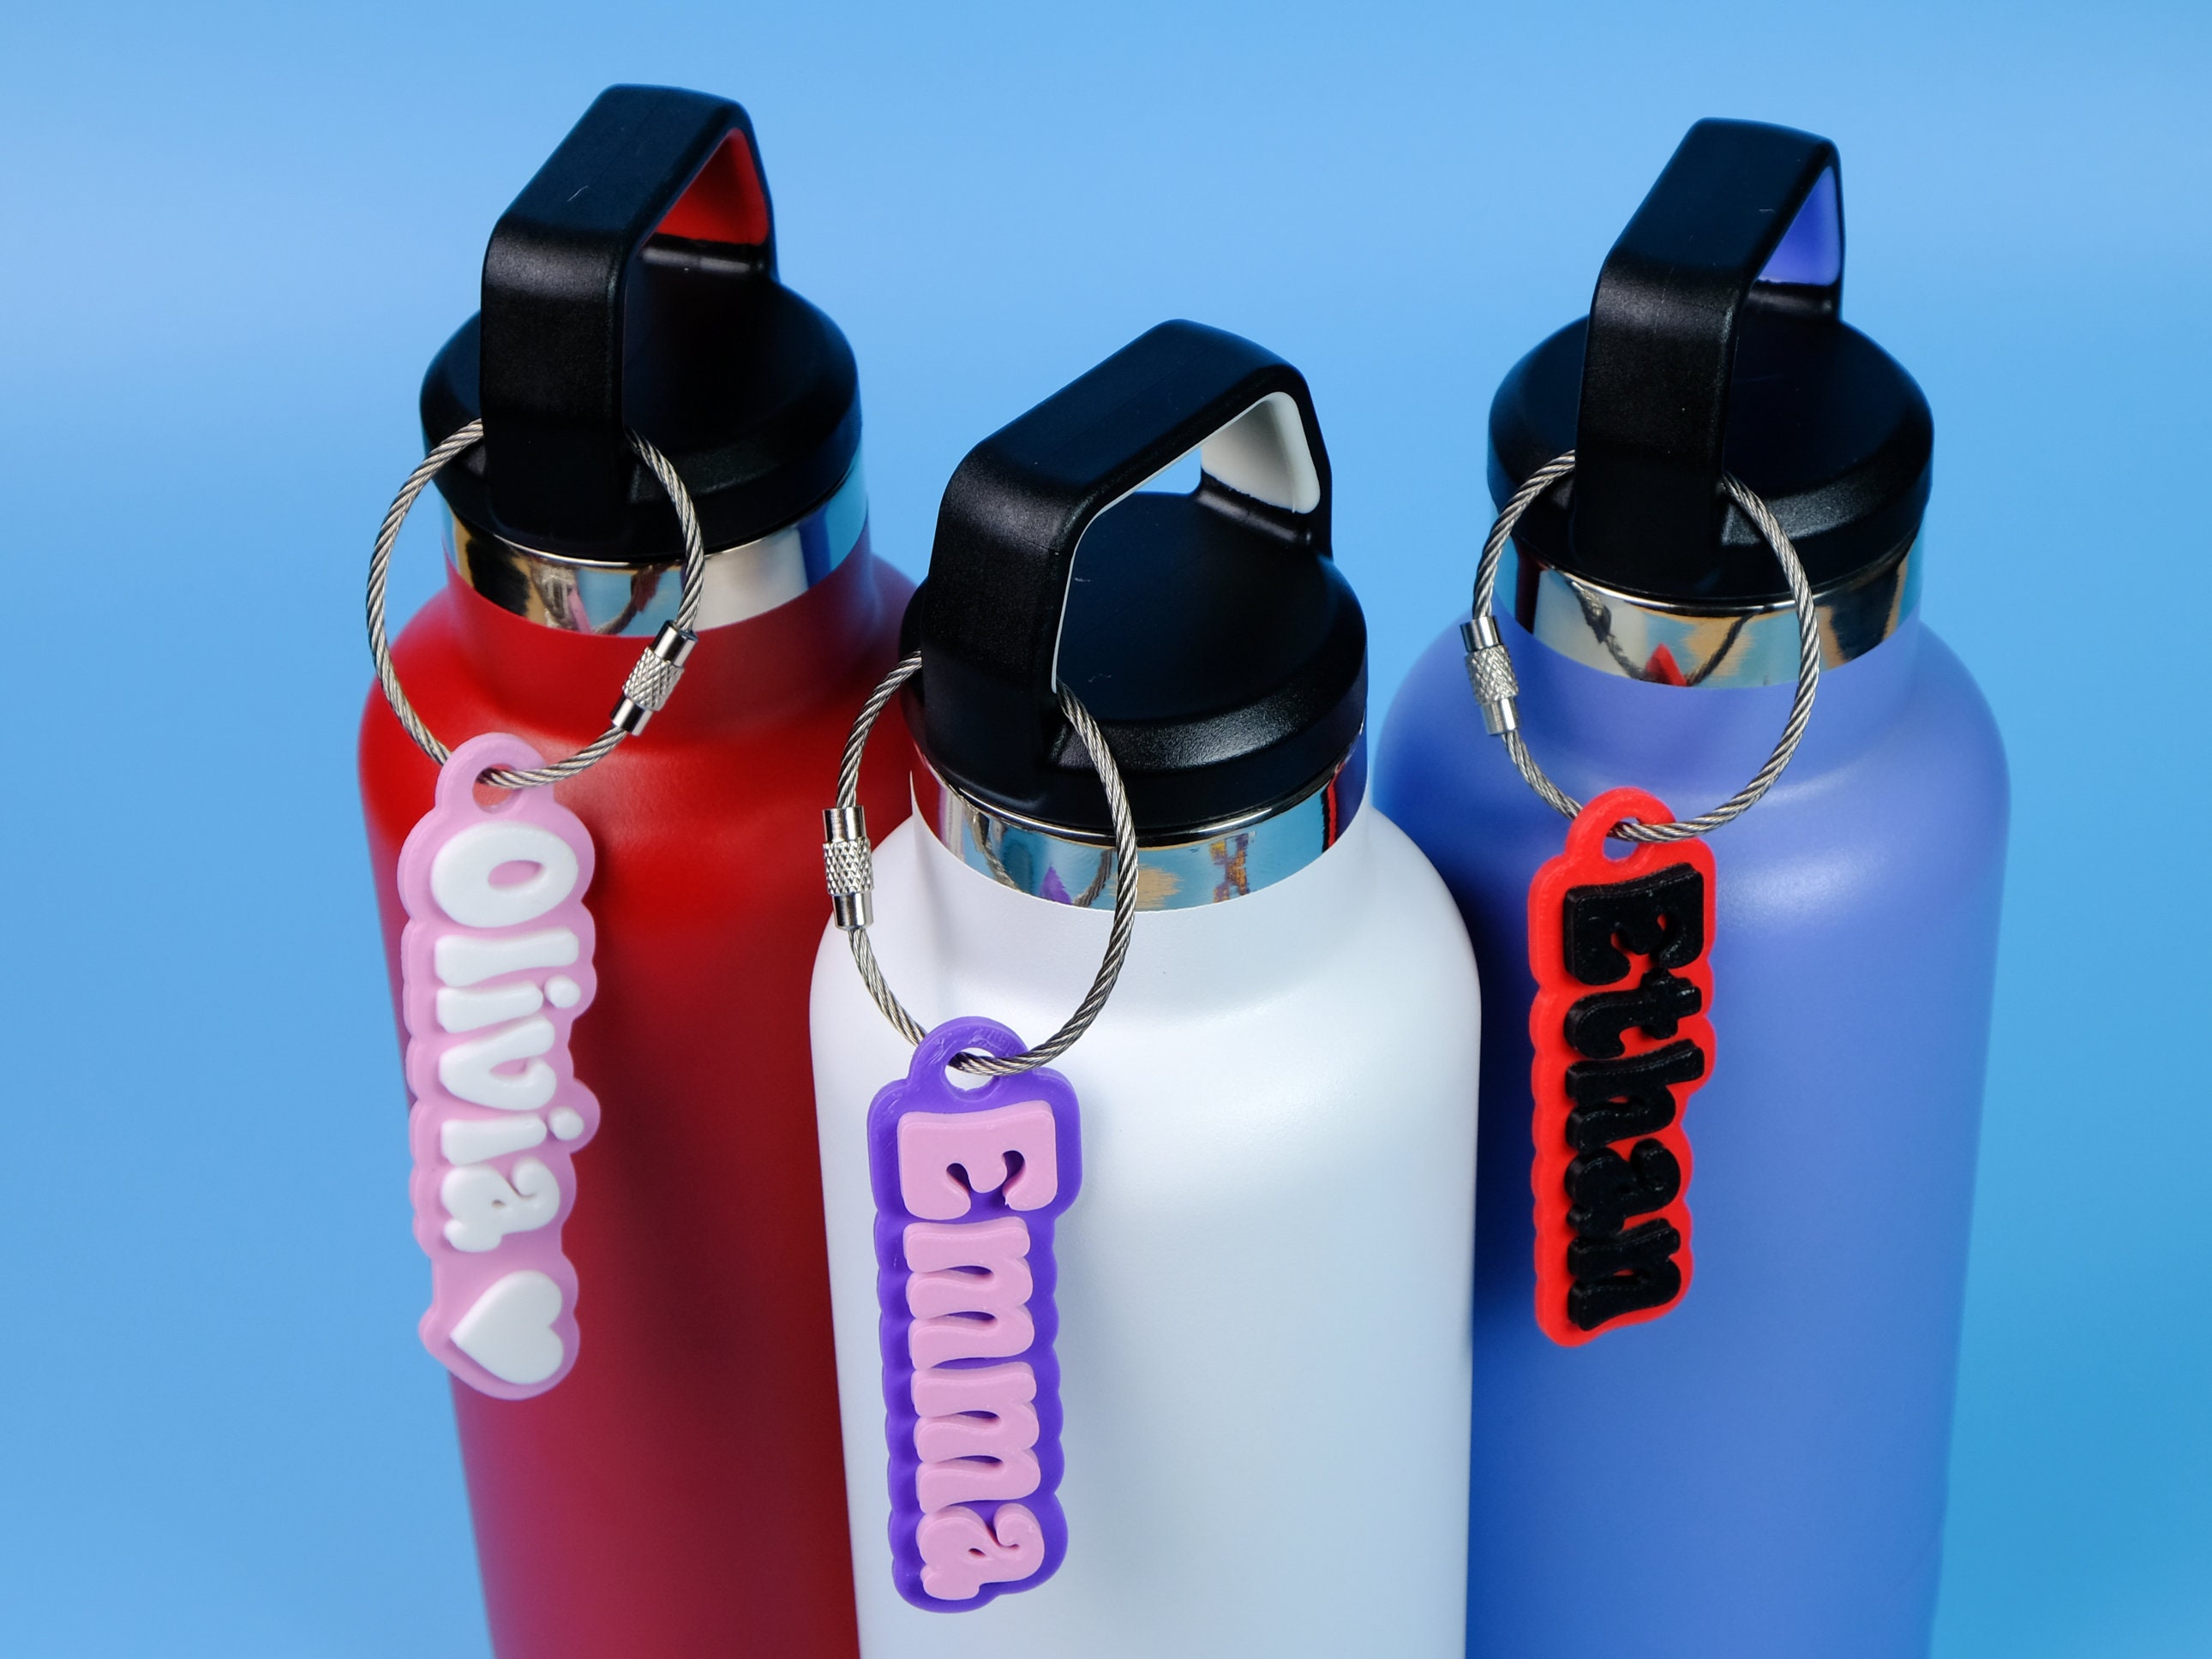 Pokémon 22oz Water Bottles, Plastic Reusable Bottles, Personalized